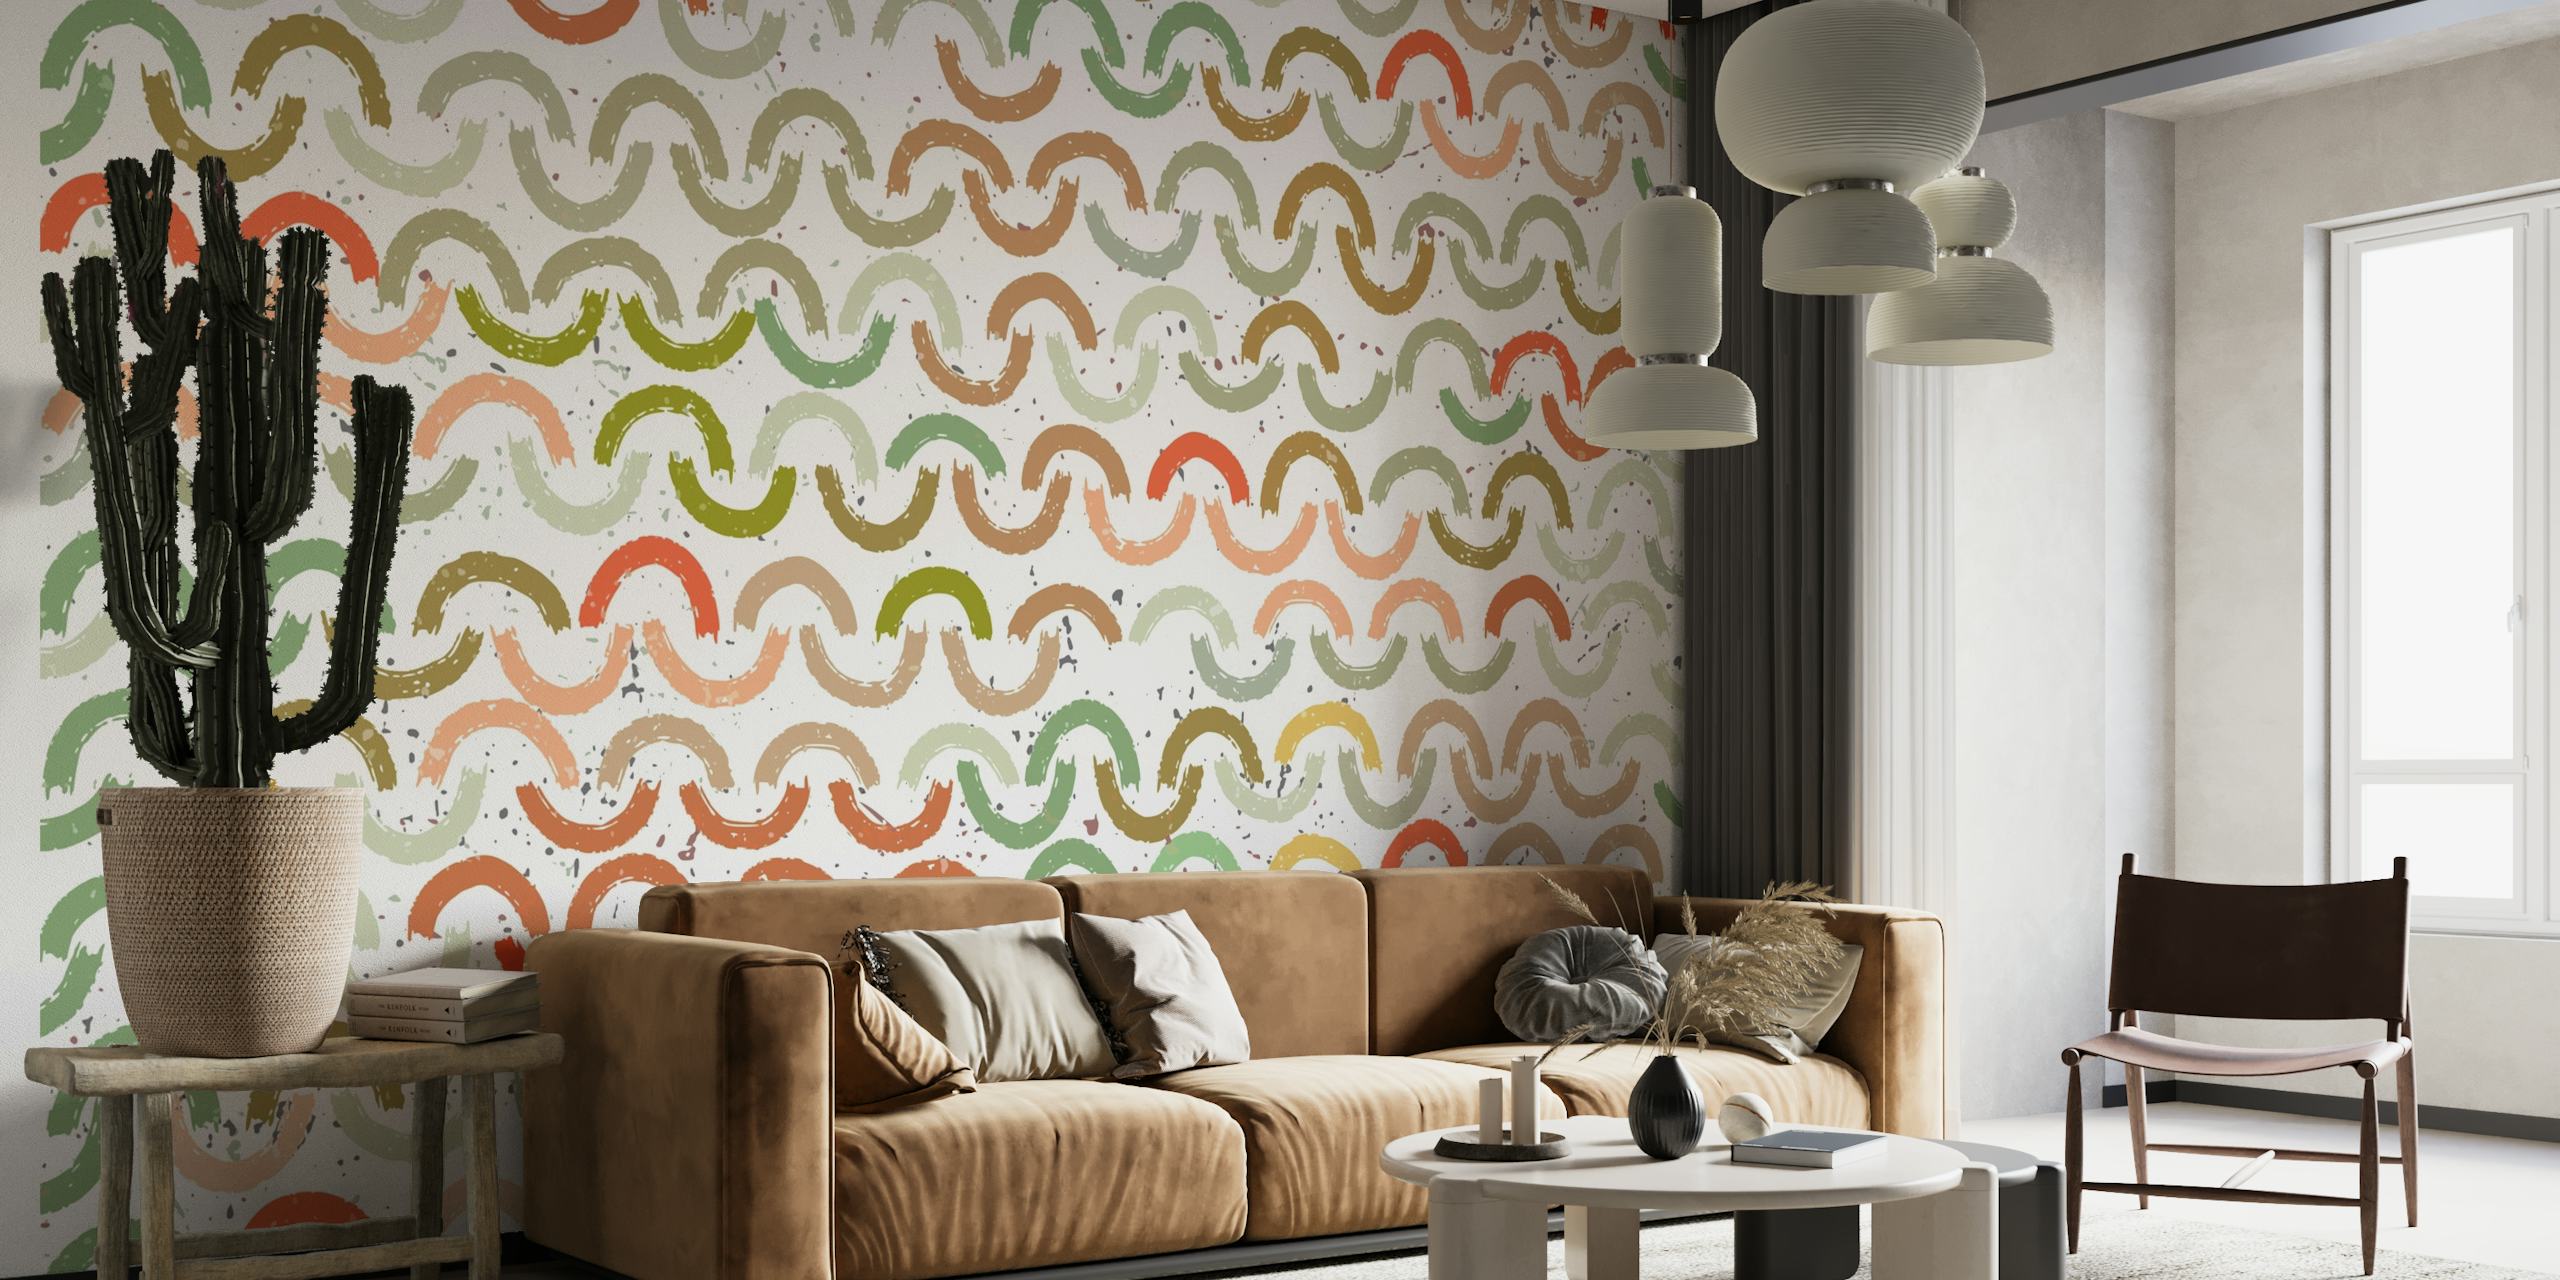 Kleurrijk fotobehang met patroon van geschilderde bogen in verschillende tinten